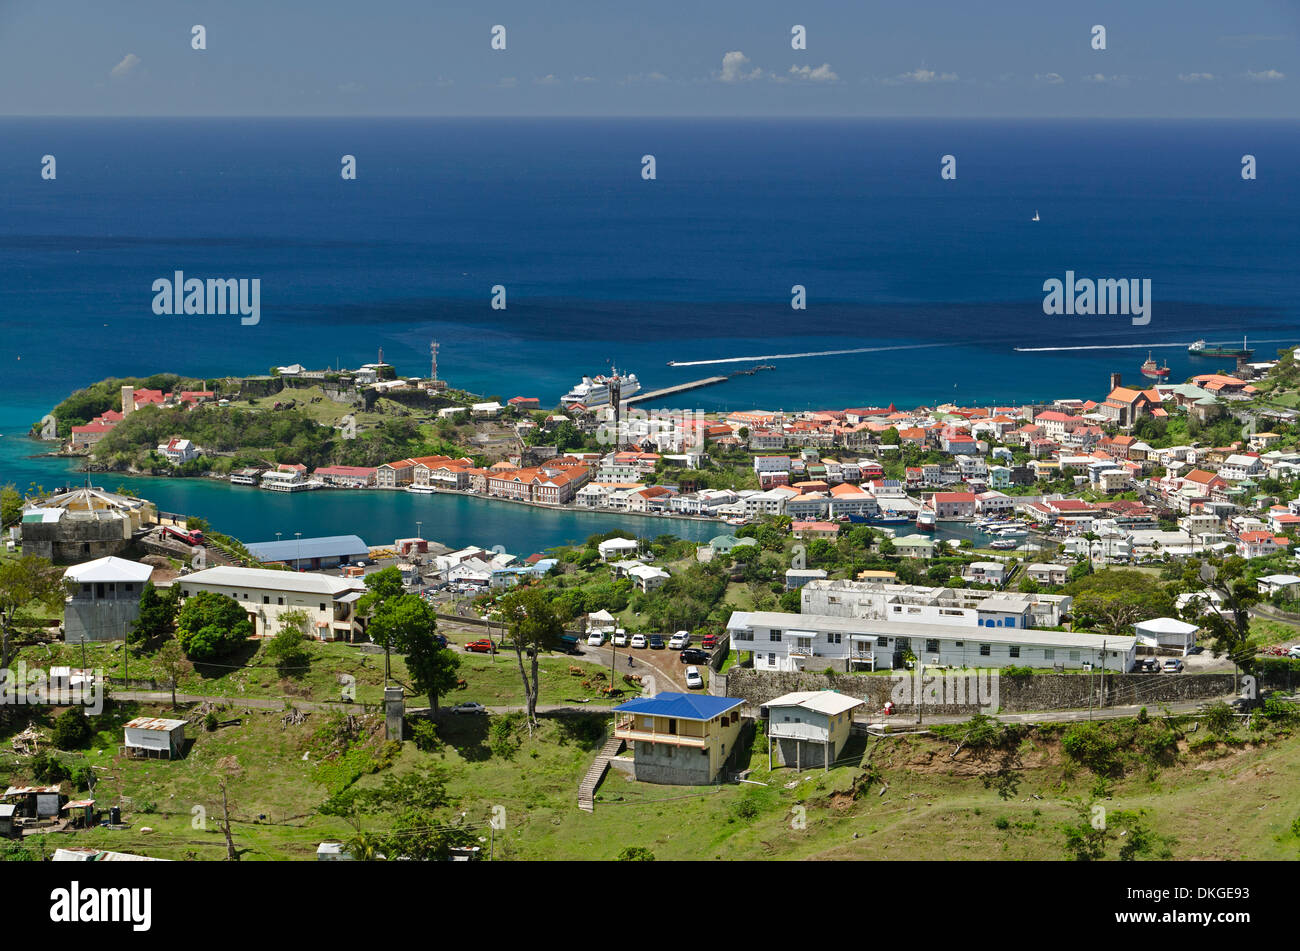 Saint George's, Grenade, Îles du Vent, Petites Antilles, Antilles, Caraïbes, Amérique Latine Banque D'Images